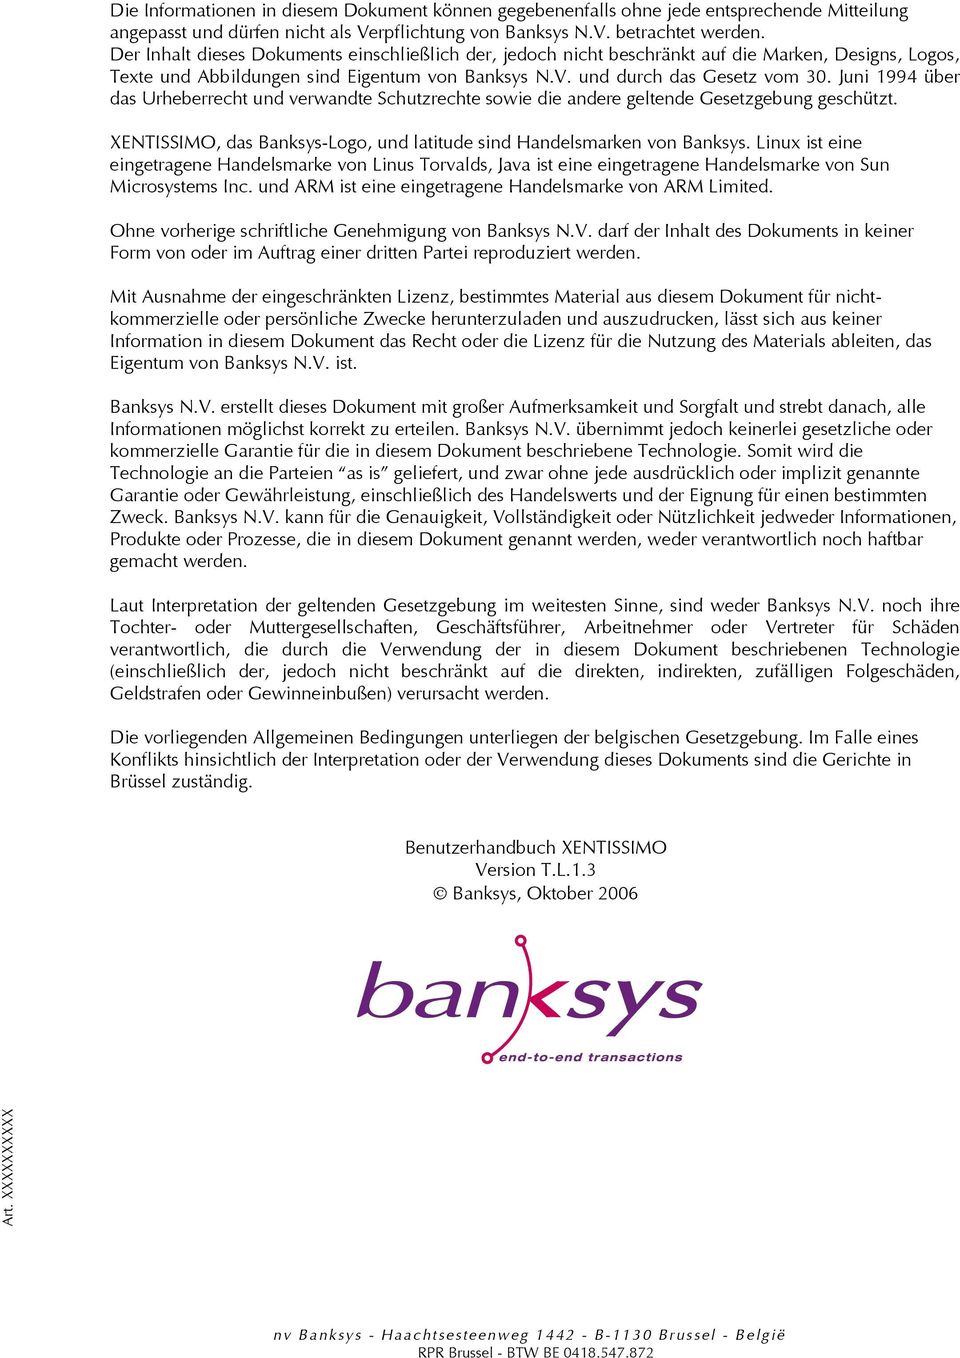 Juni 1994 über das Urheberrecht und verwandte Schutzrechte sowie die andere geltende Gesetzgebung geschützt. XENTISSIMO, das Banksys-Logo, und latitude sind Handelsmarken von Banksys.